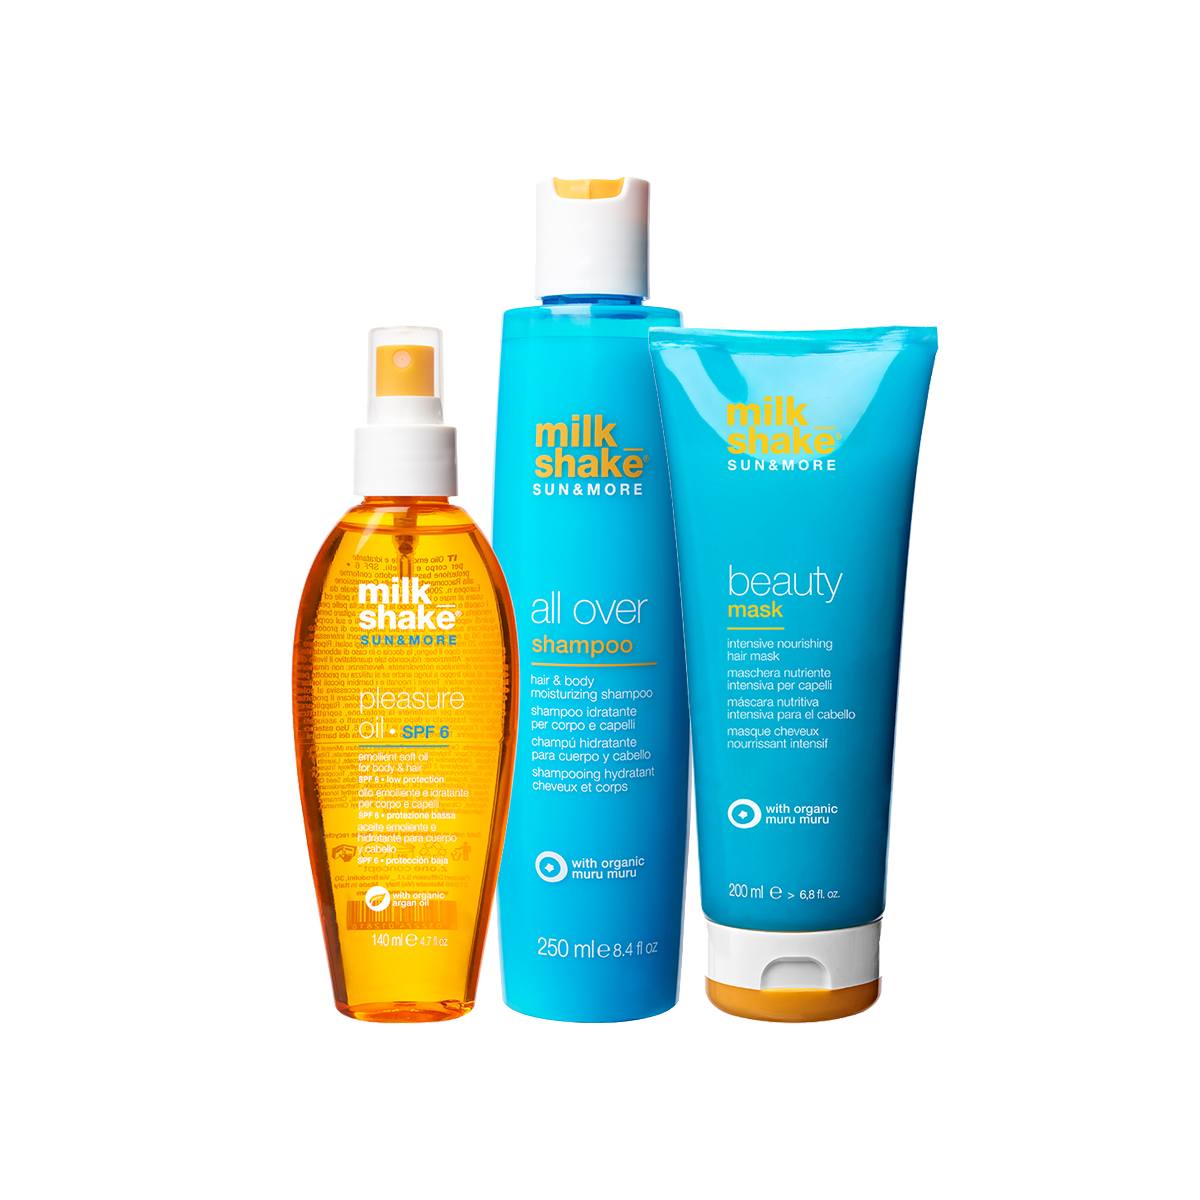 Pack Milk Shake Sun&more All Over Shampoo 250ml + Beauty Mask 200ml + Pleasure Oil SPF 6 140ml